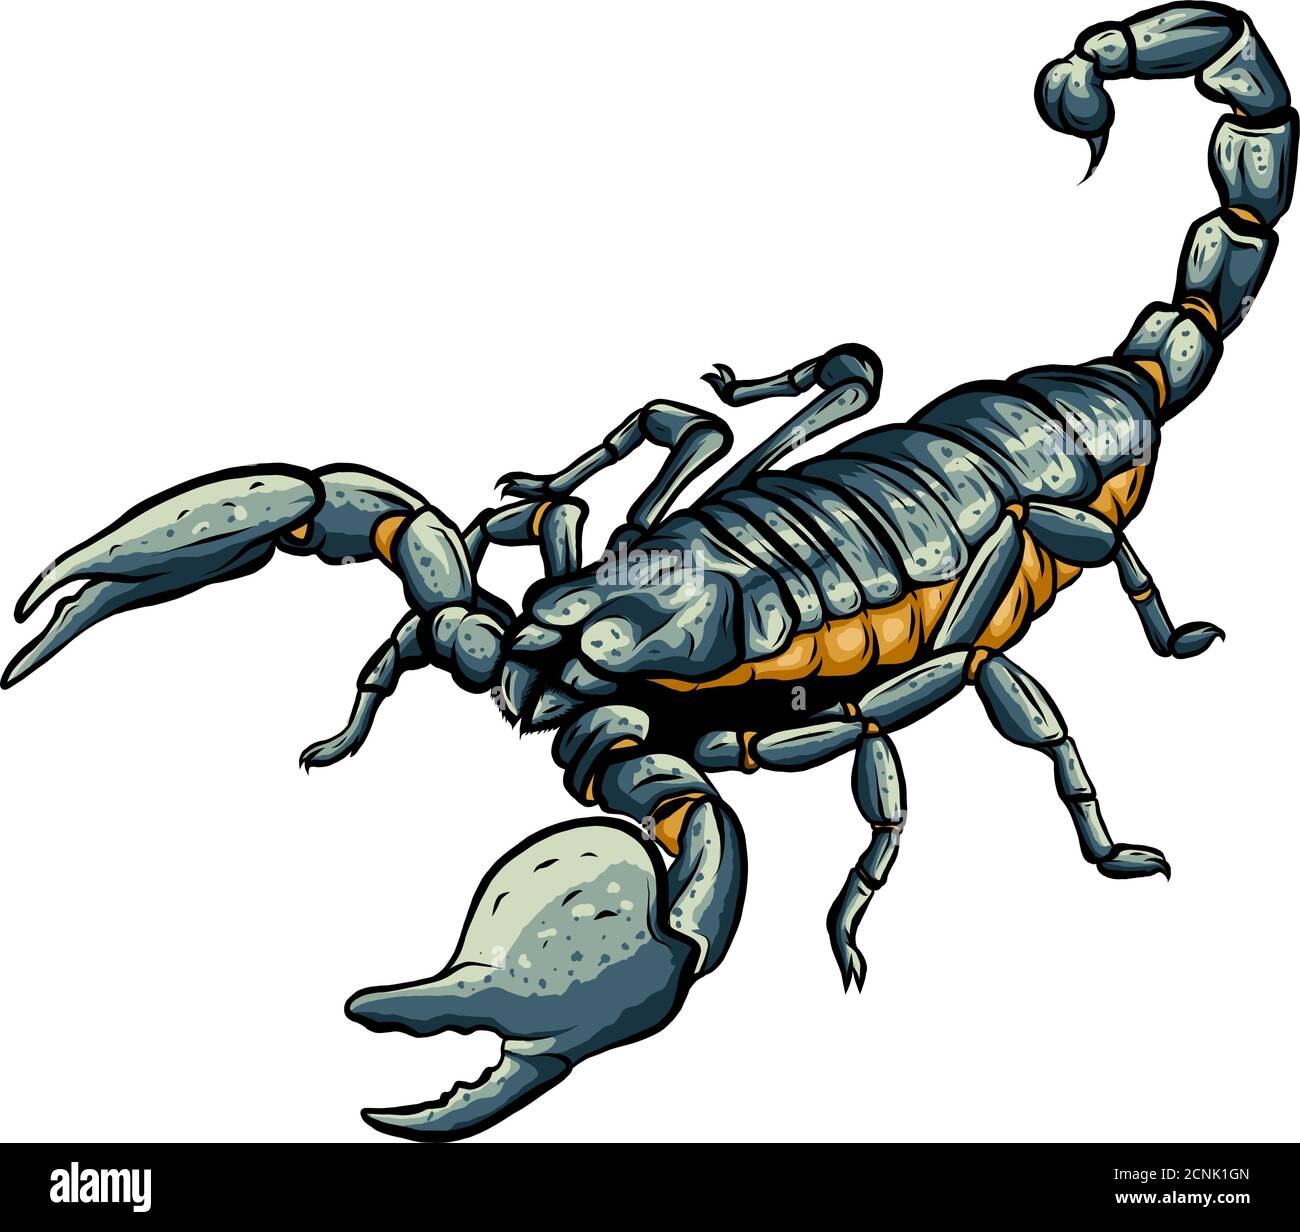 Illustrazione di scorpione arachnid insetto. Grafica vettoriale Illustrazione Vettoriale